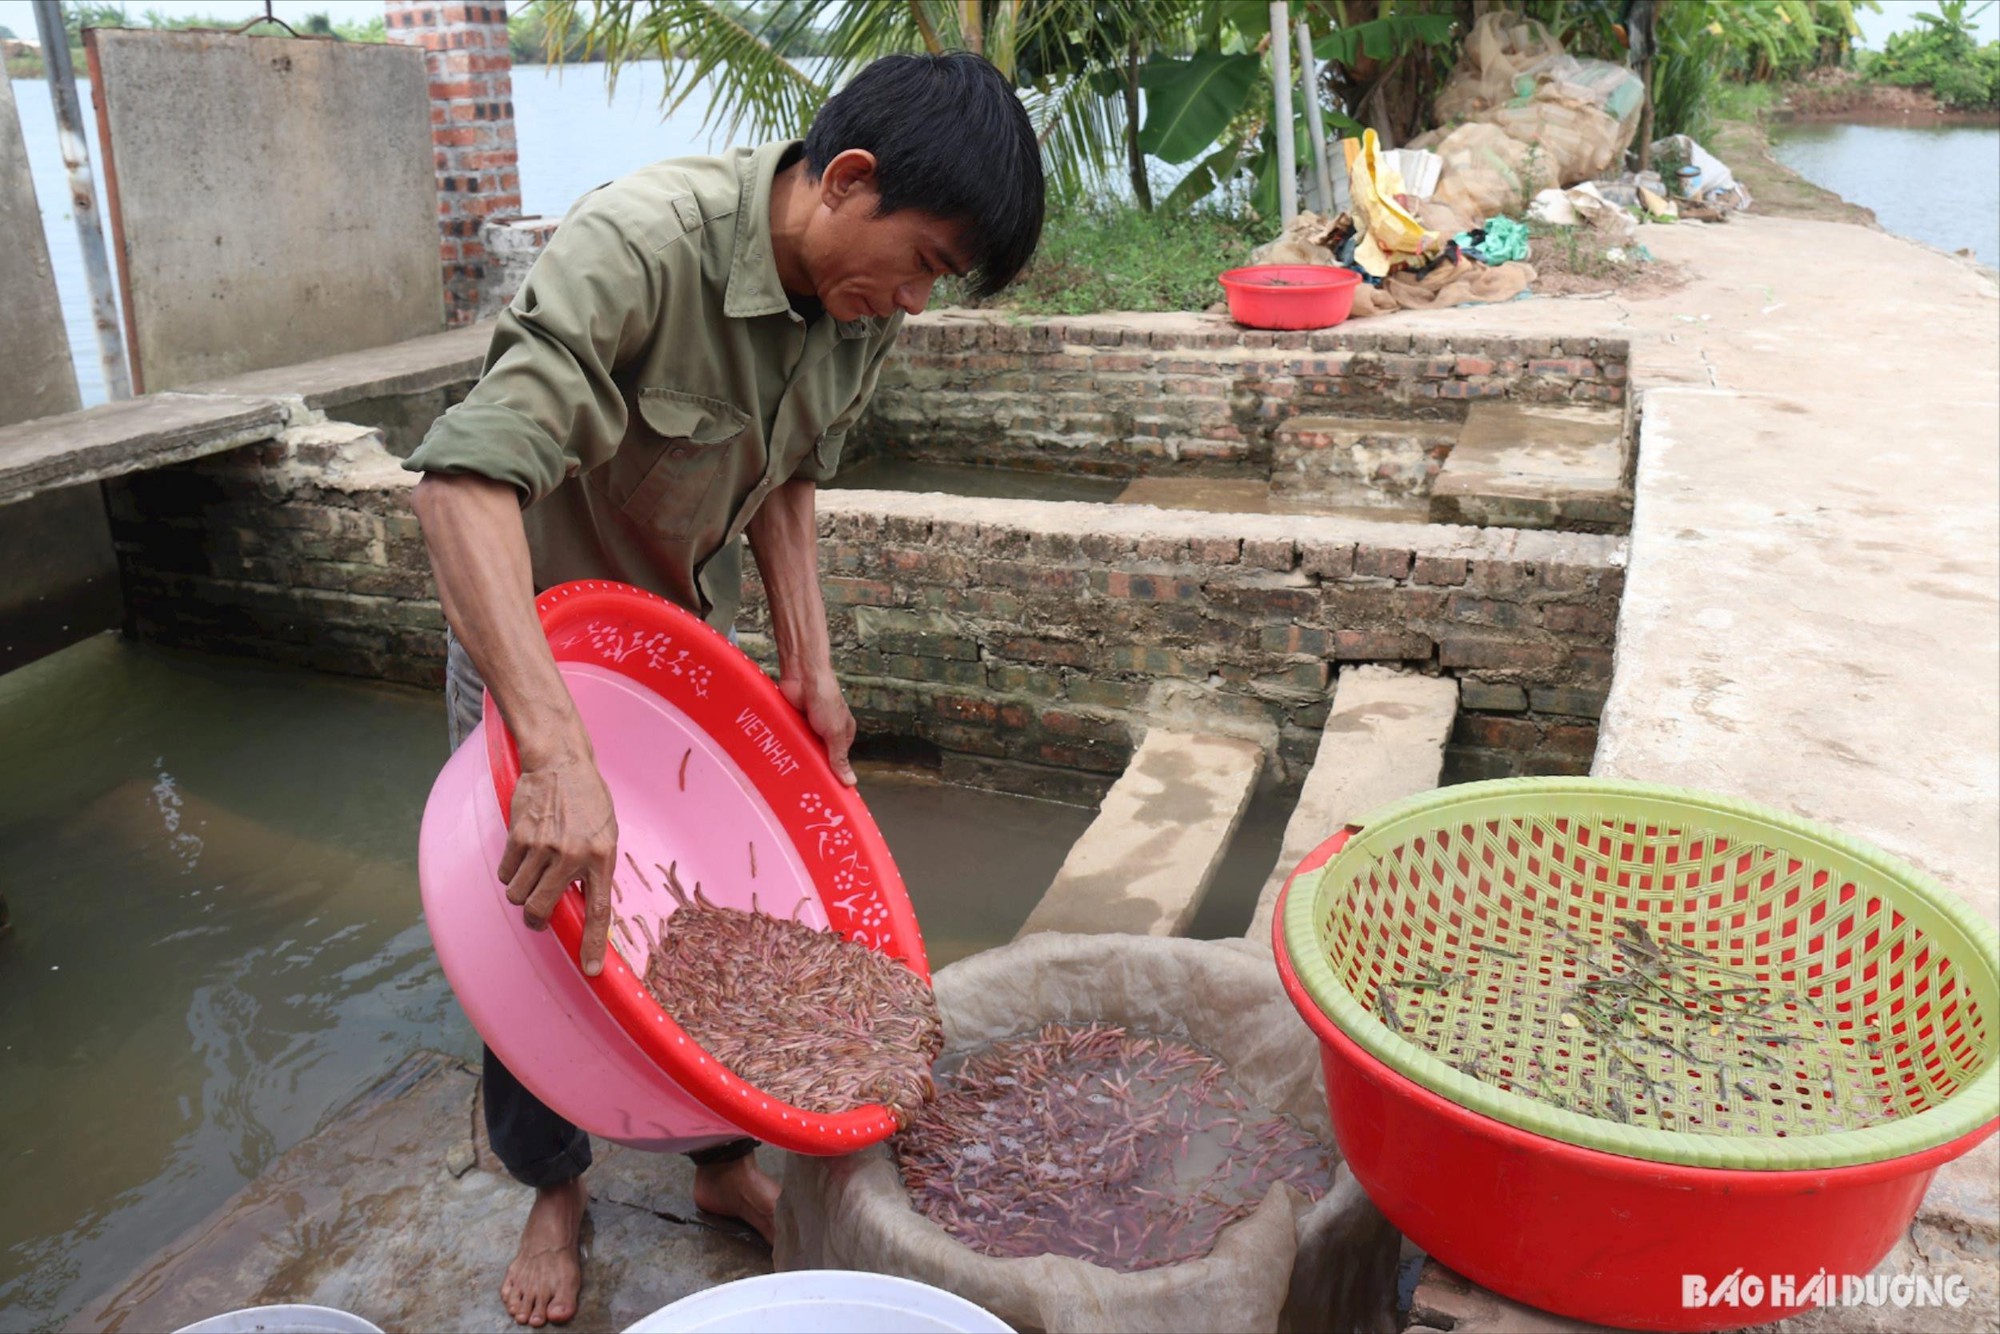  Nông dân huyện Thanh Hà, Hải Dương mua ngô, đậu tương về xay rồi rắc ra ngoài bãi để giữ 'lộc trời' - Ảnh 1.